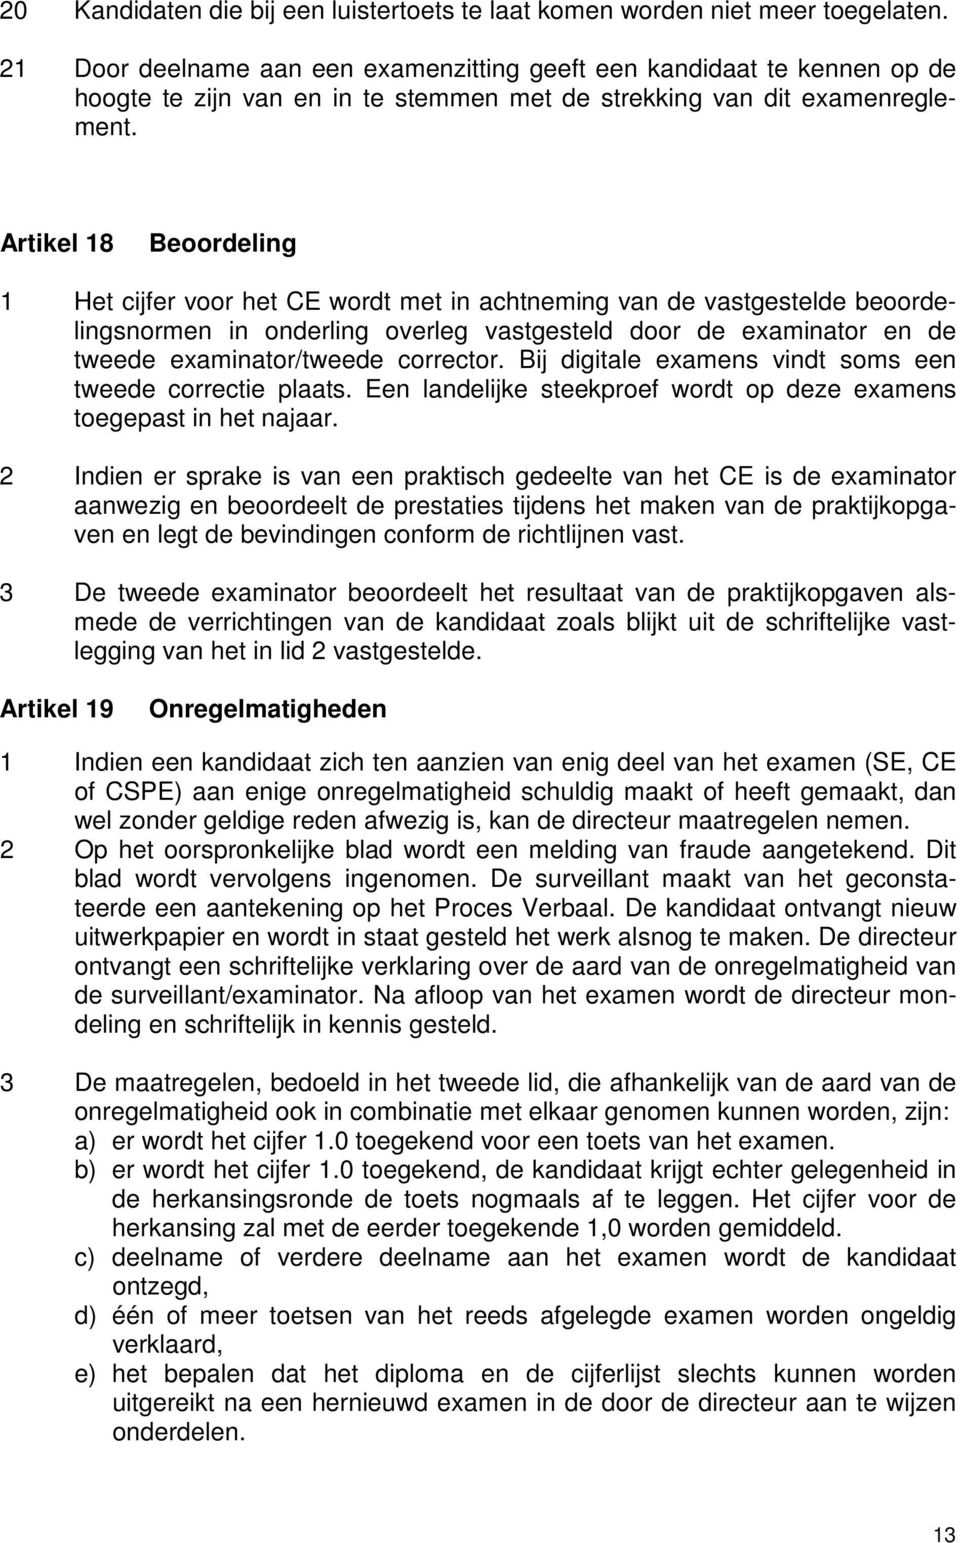 Artikel 18 Beoordeling 1 Het cijfer voor het CE wordt met in achtneming van de vastgestelde beoordelingsnormen in onderling overleg vastgesteld door de examinator en de tweede examinator/tweede